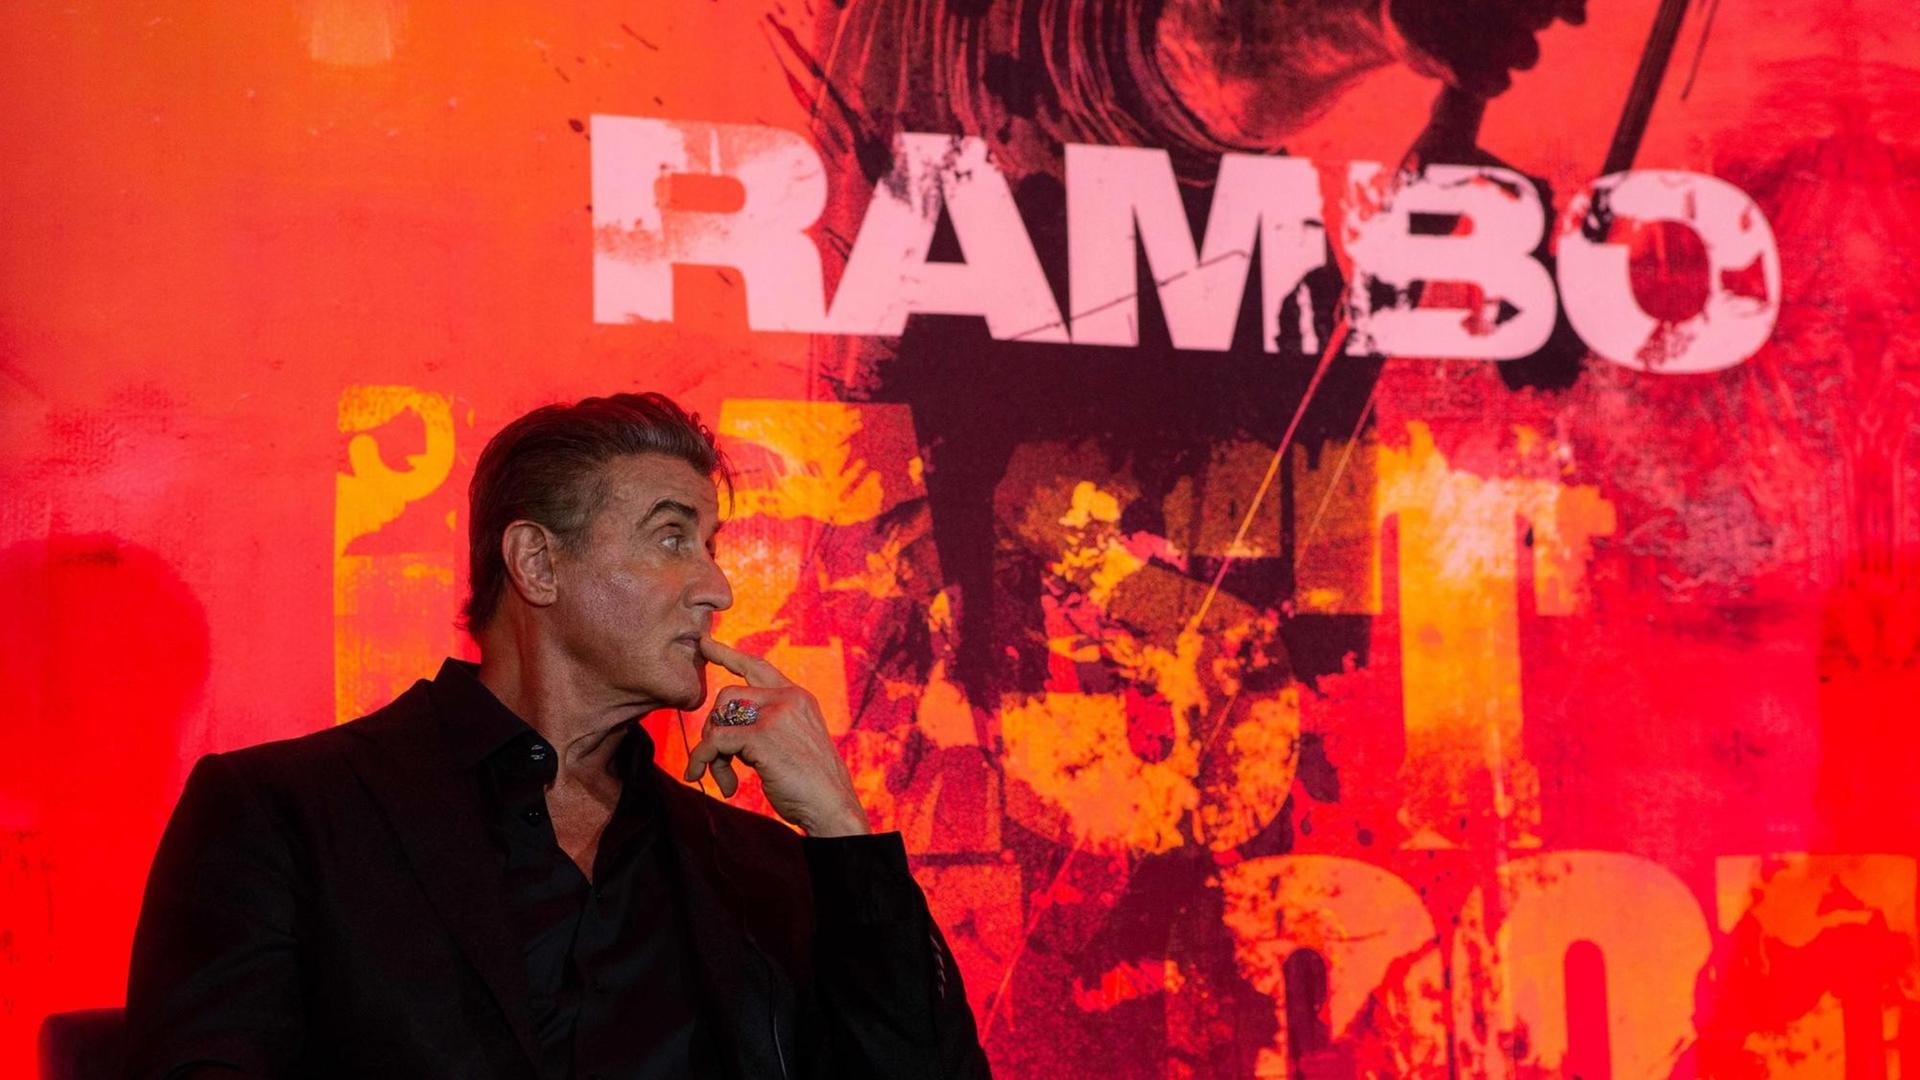 Der Schauspieler Sylvester Stallone sitzt in einem schwarzen Anzug vor einer Wand auf der "Rambo" geschrieben steht.